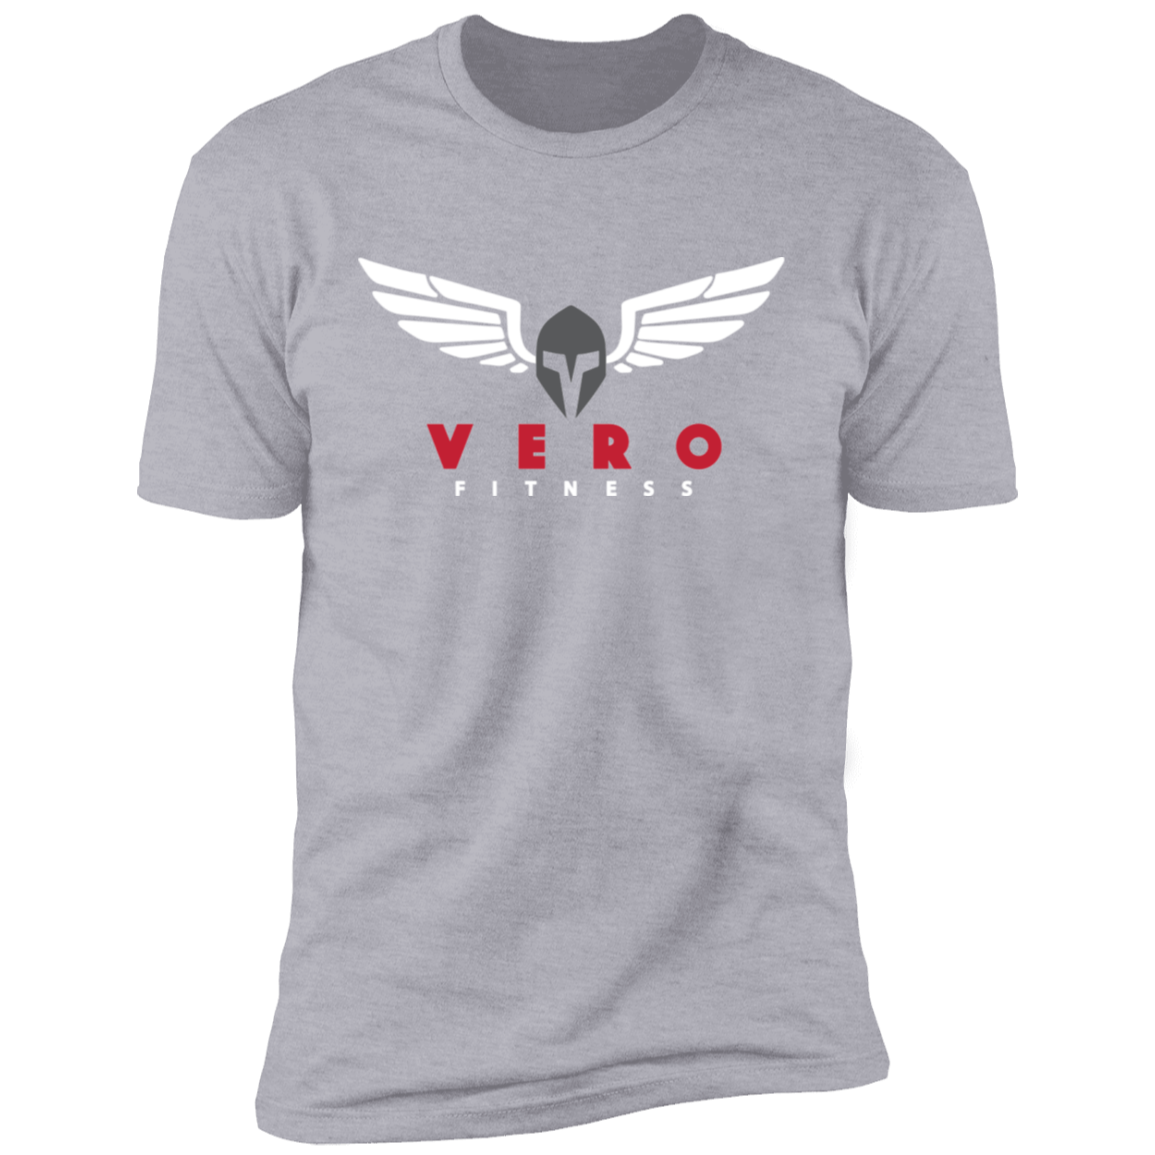 VERO Fitness Premium Short Sleeve T-Shirt